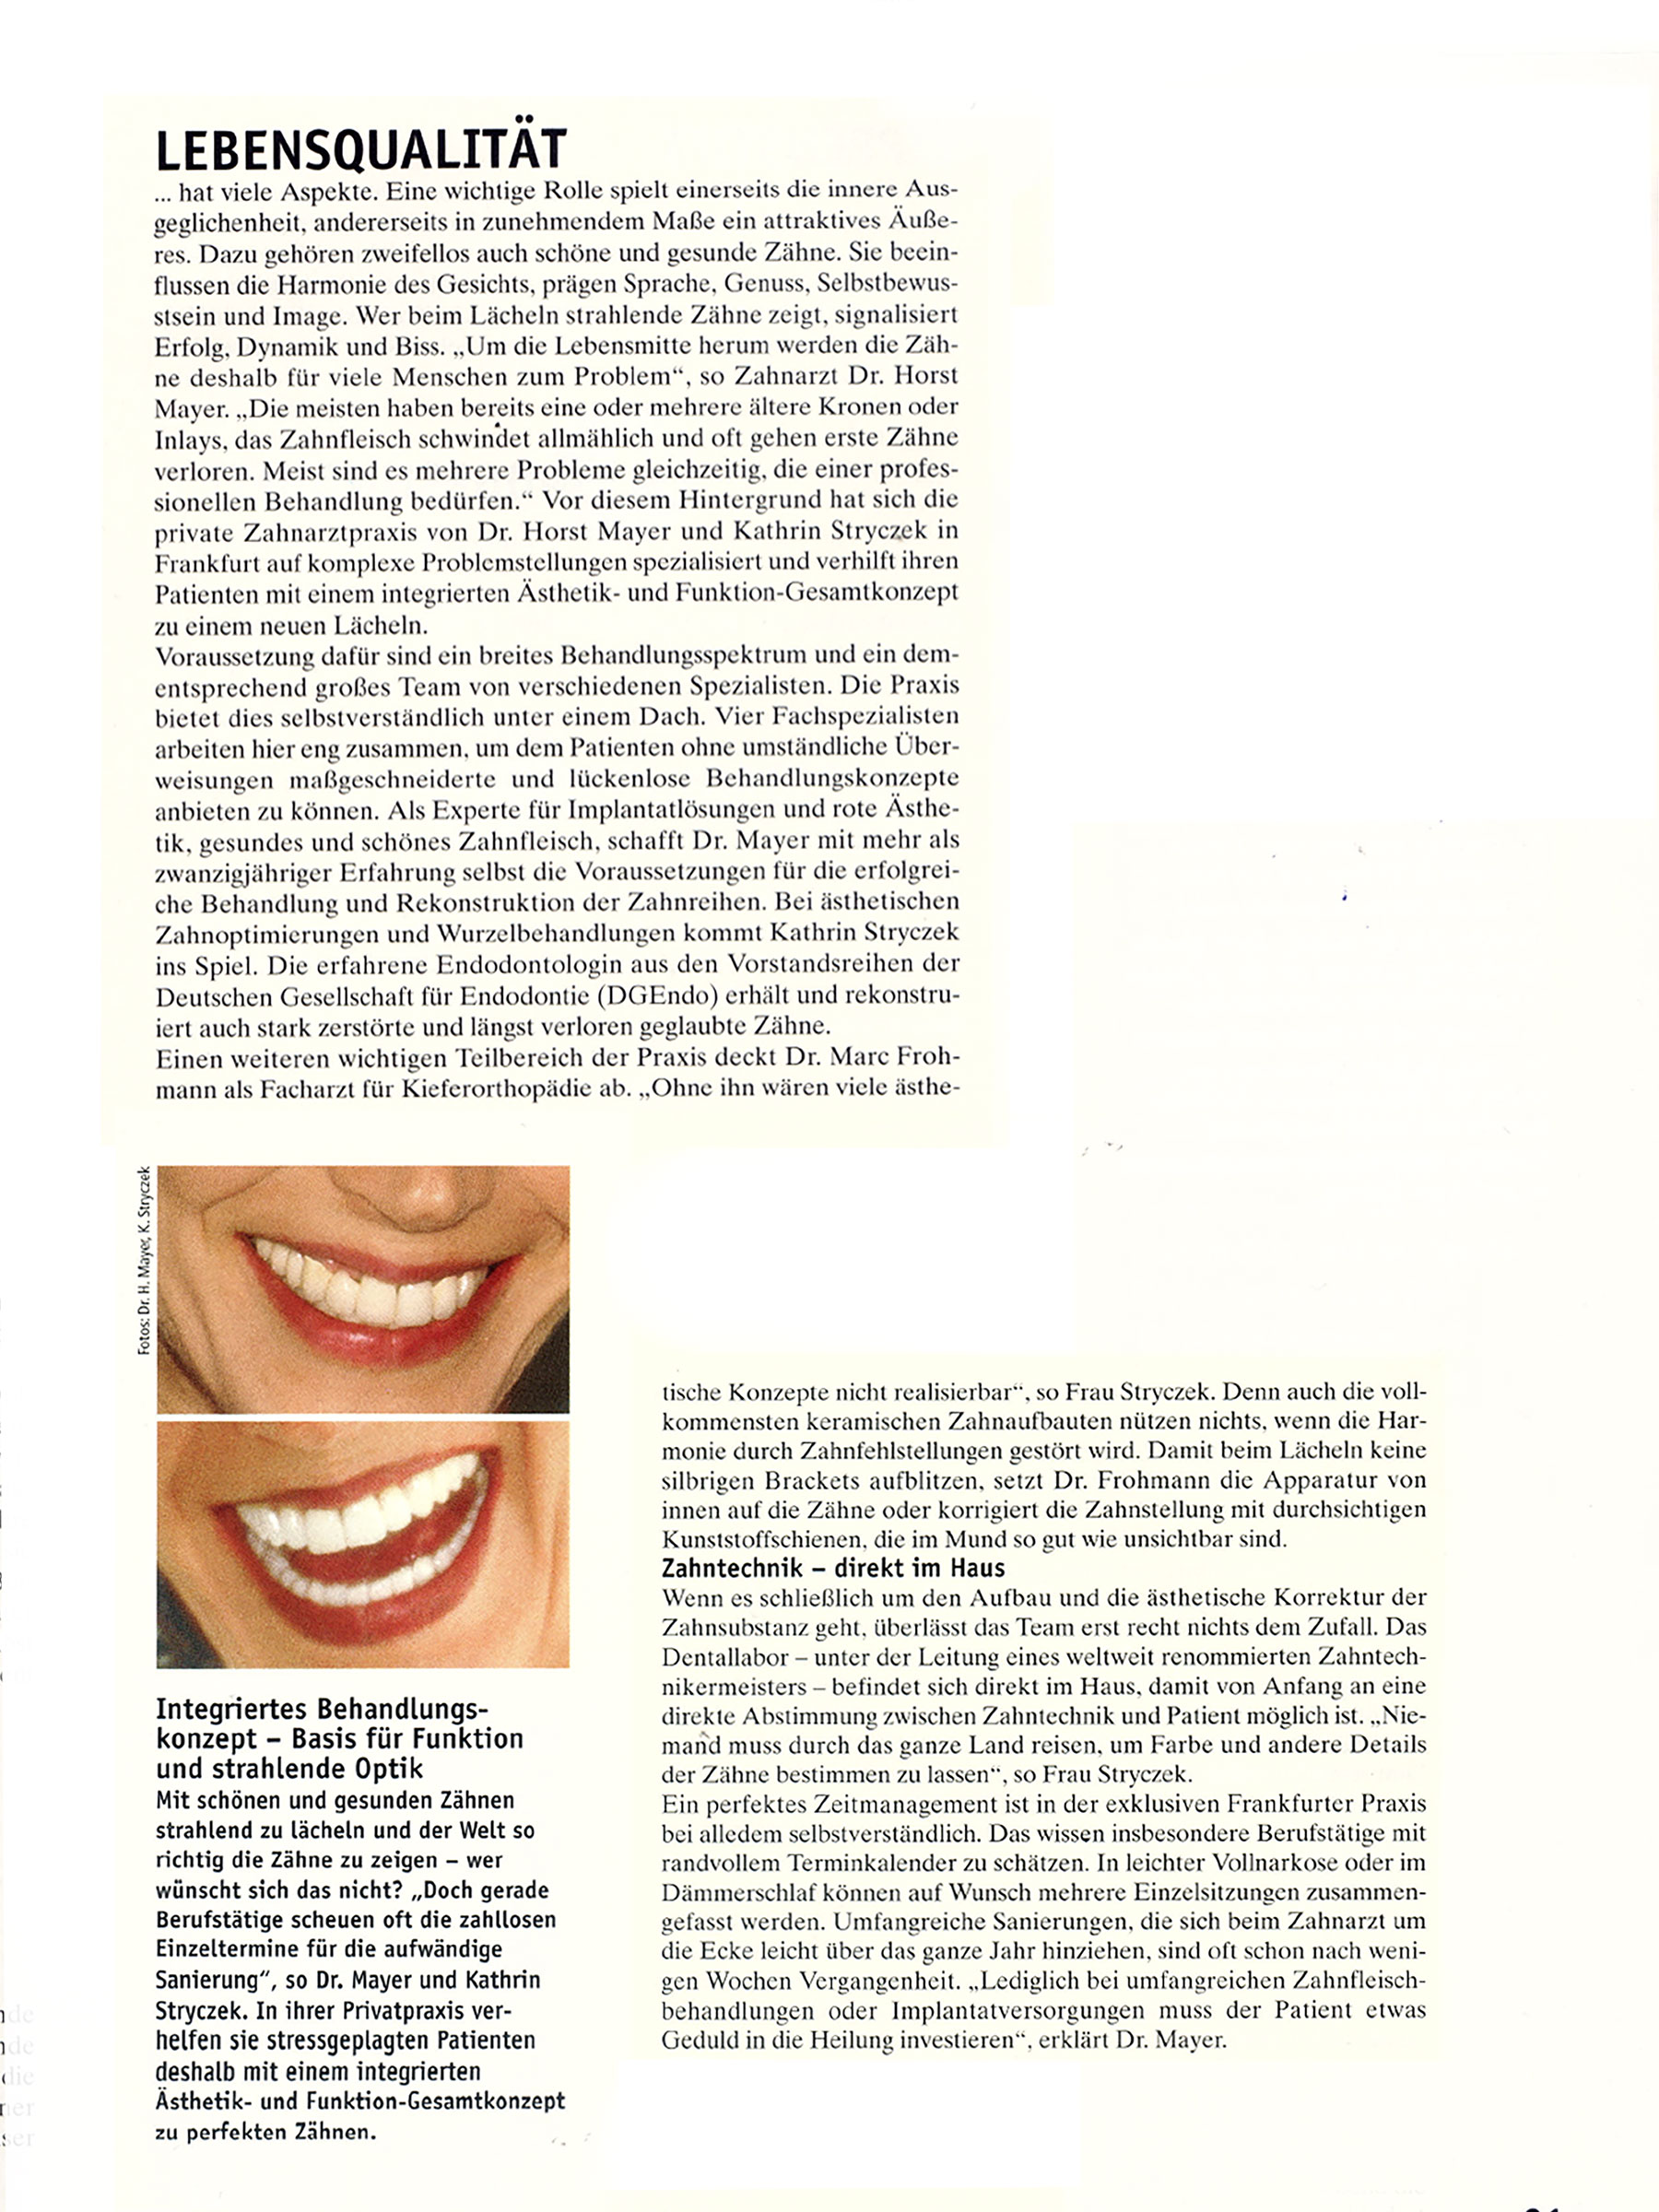 „Die aktuellen Methoden der Schönheitsmedizin. Jünger aussehen, sich besser fühlen, schöner lächeln.“ Sonderpublikation, 06/2006